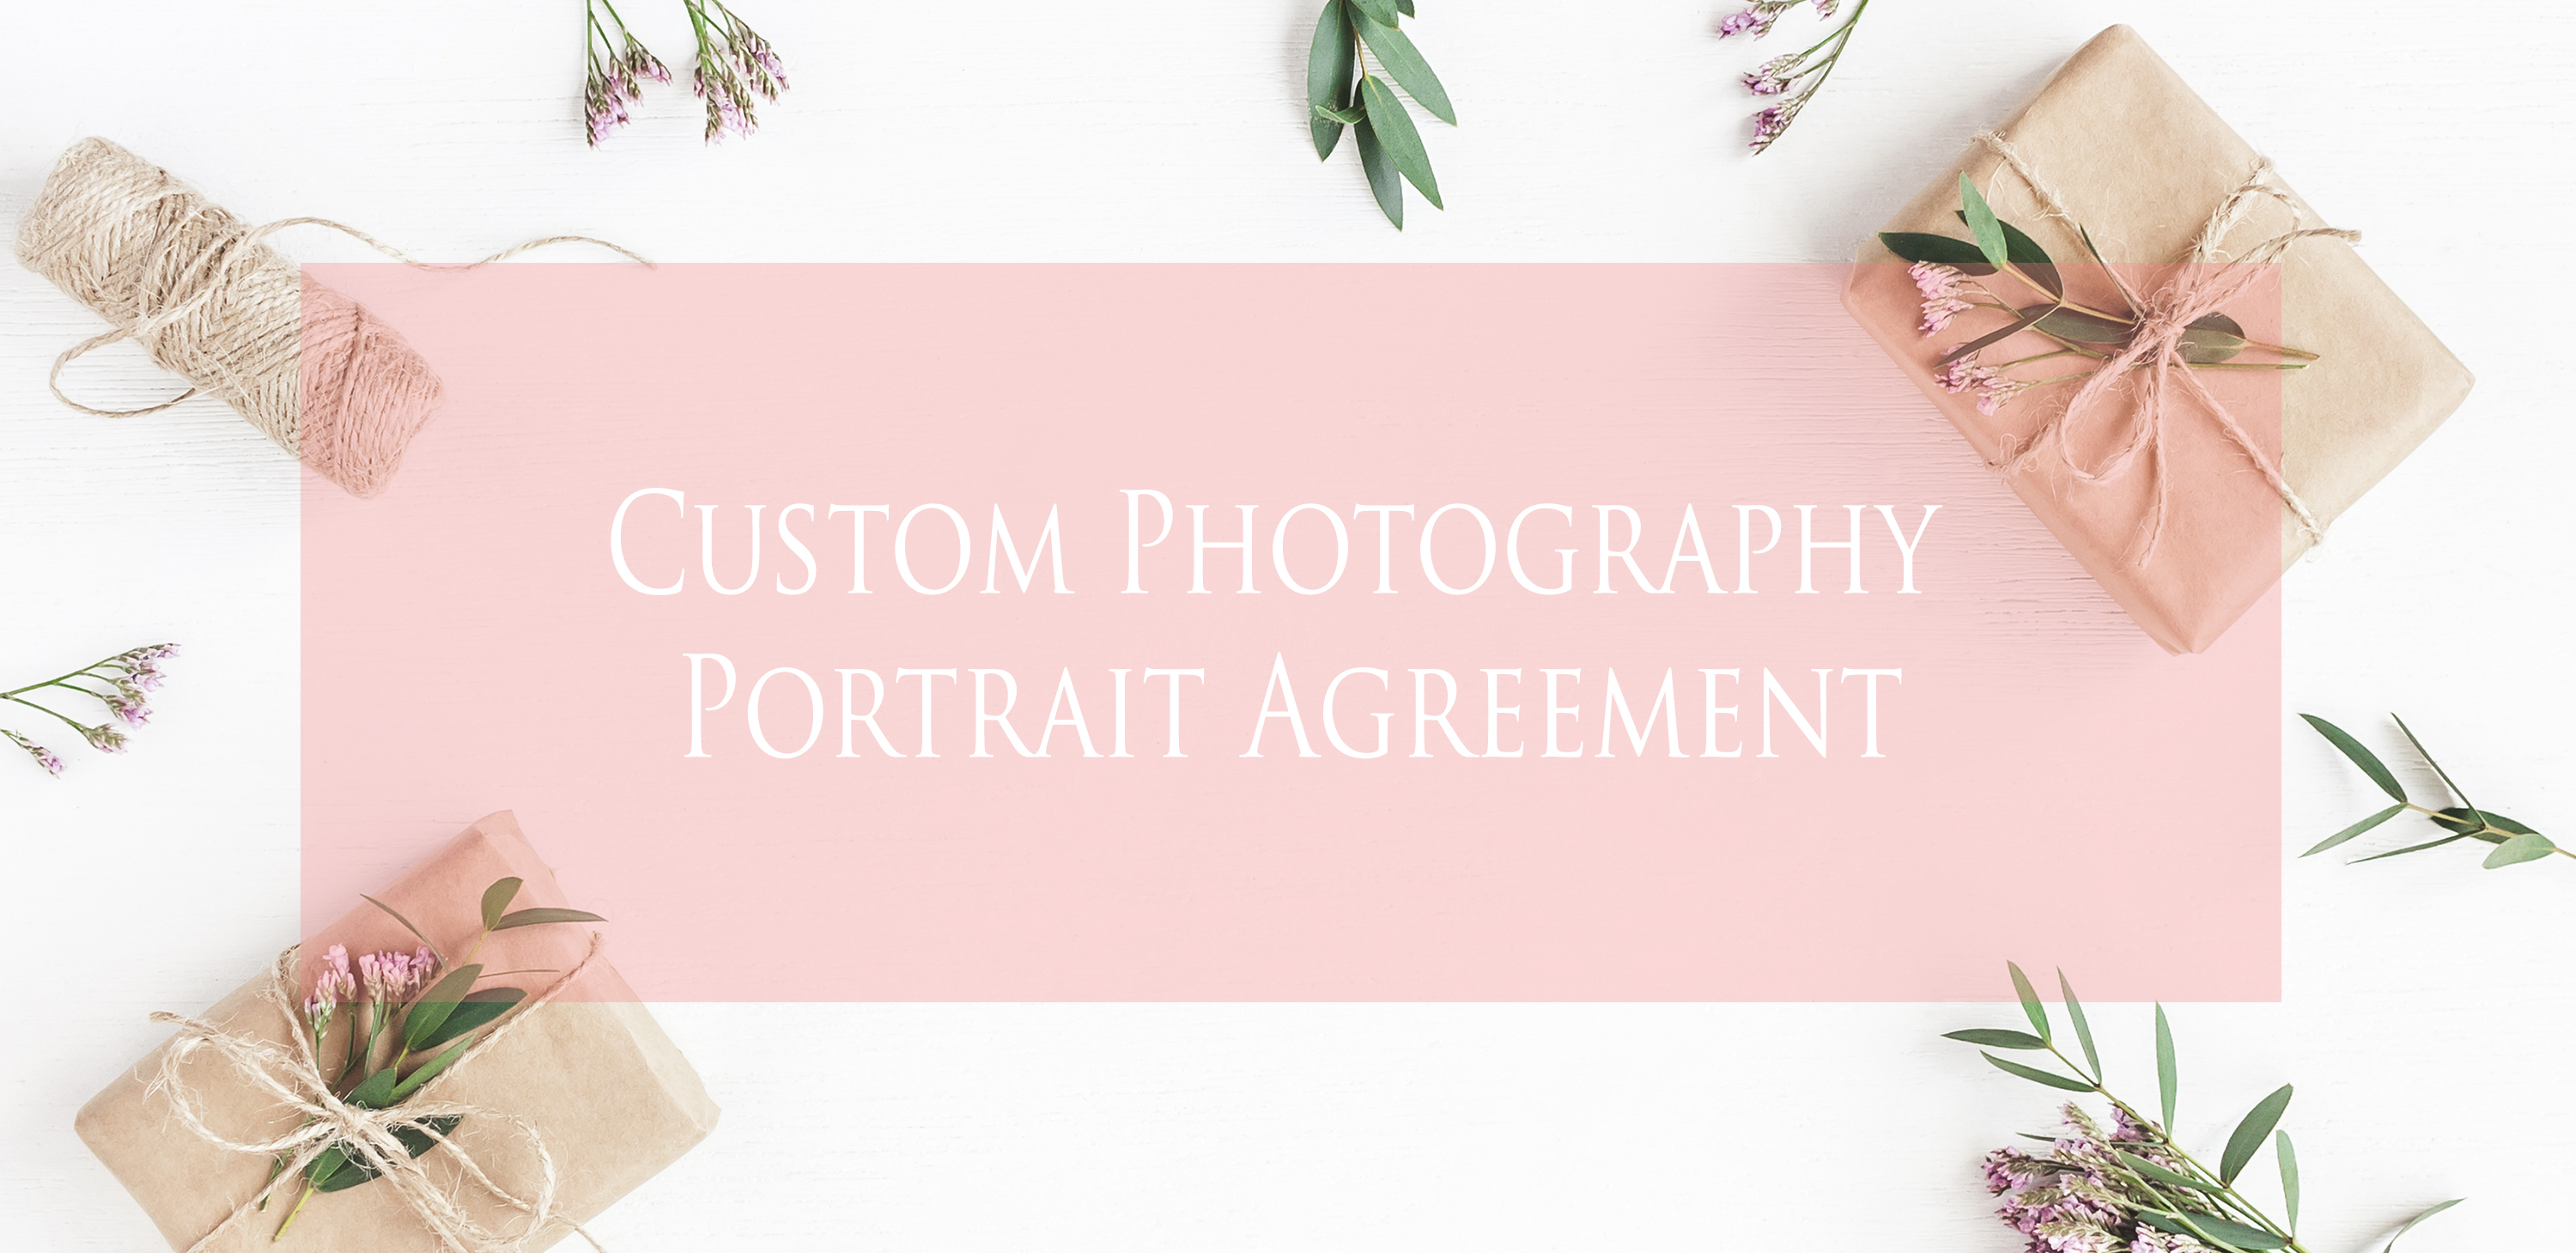 Portrait Agreement Form Portrait Agreement A Form For Your Clients